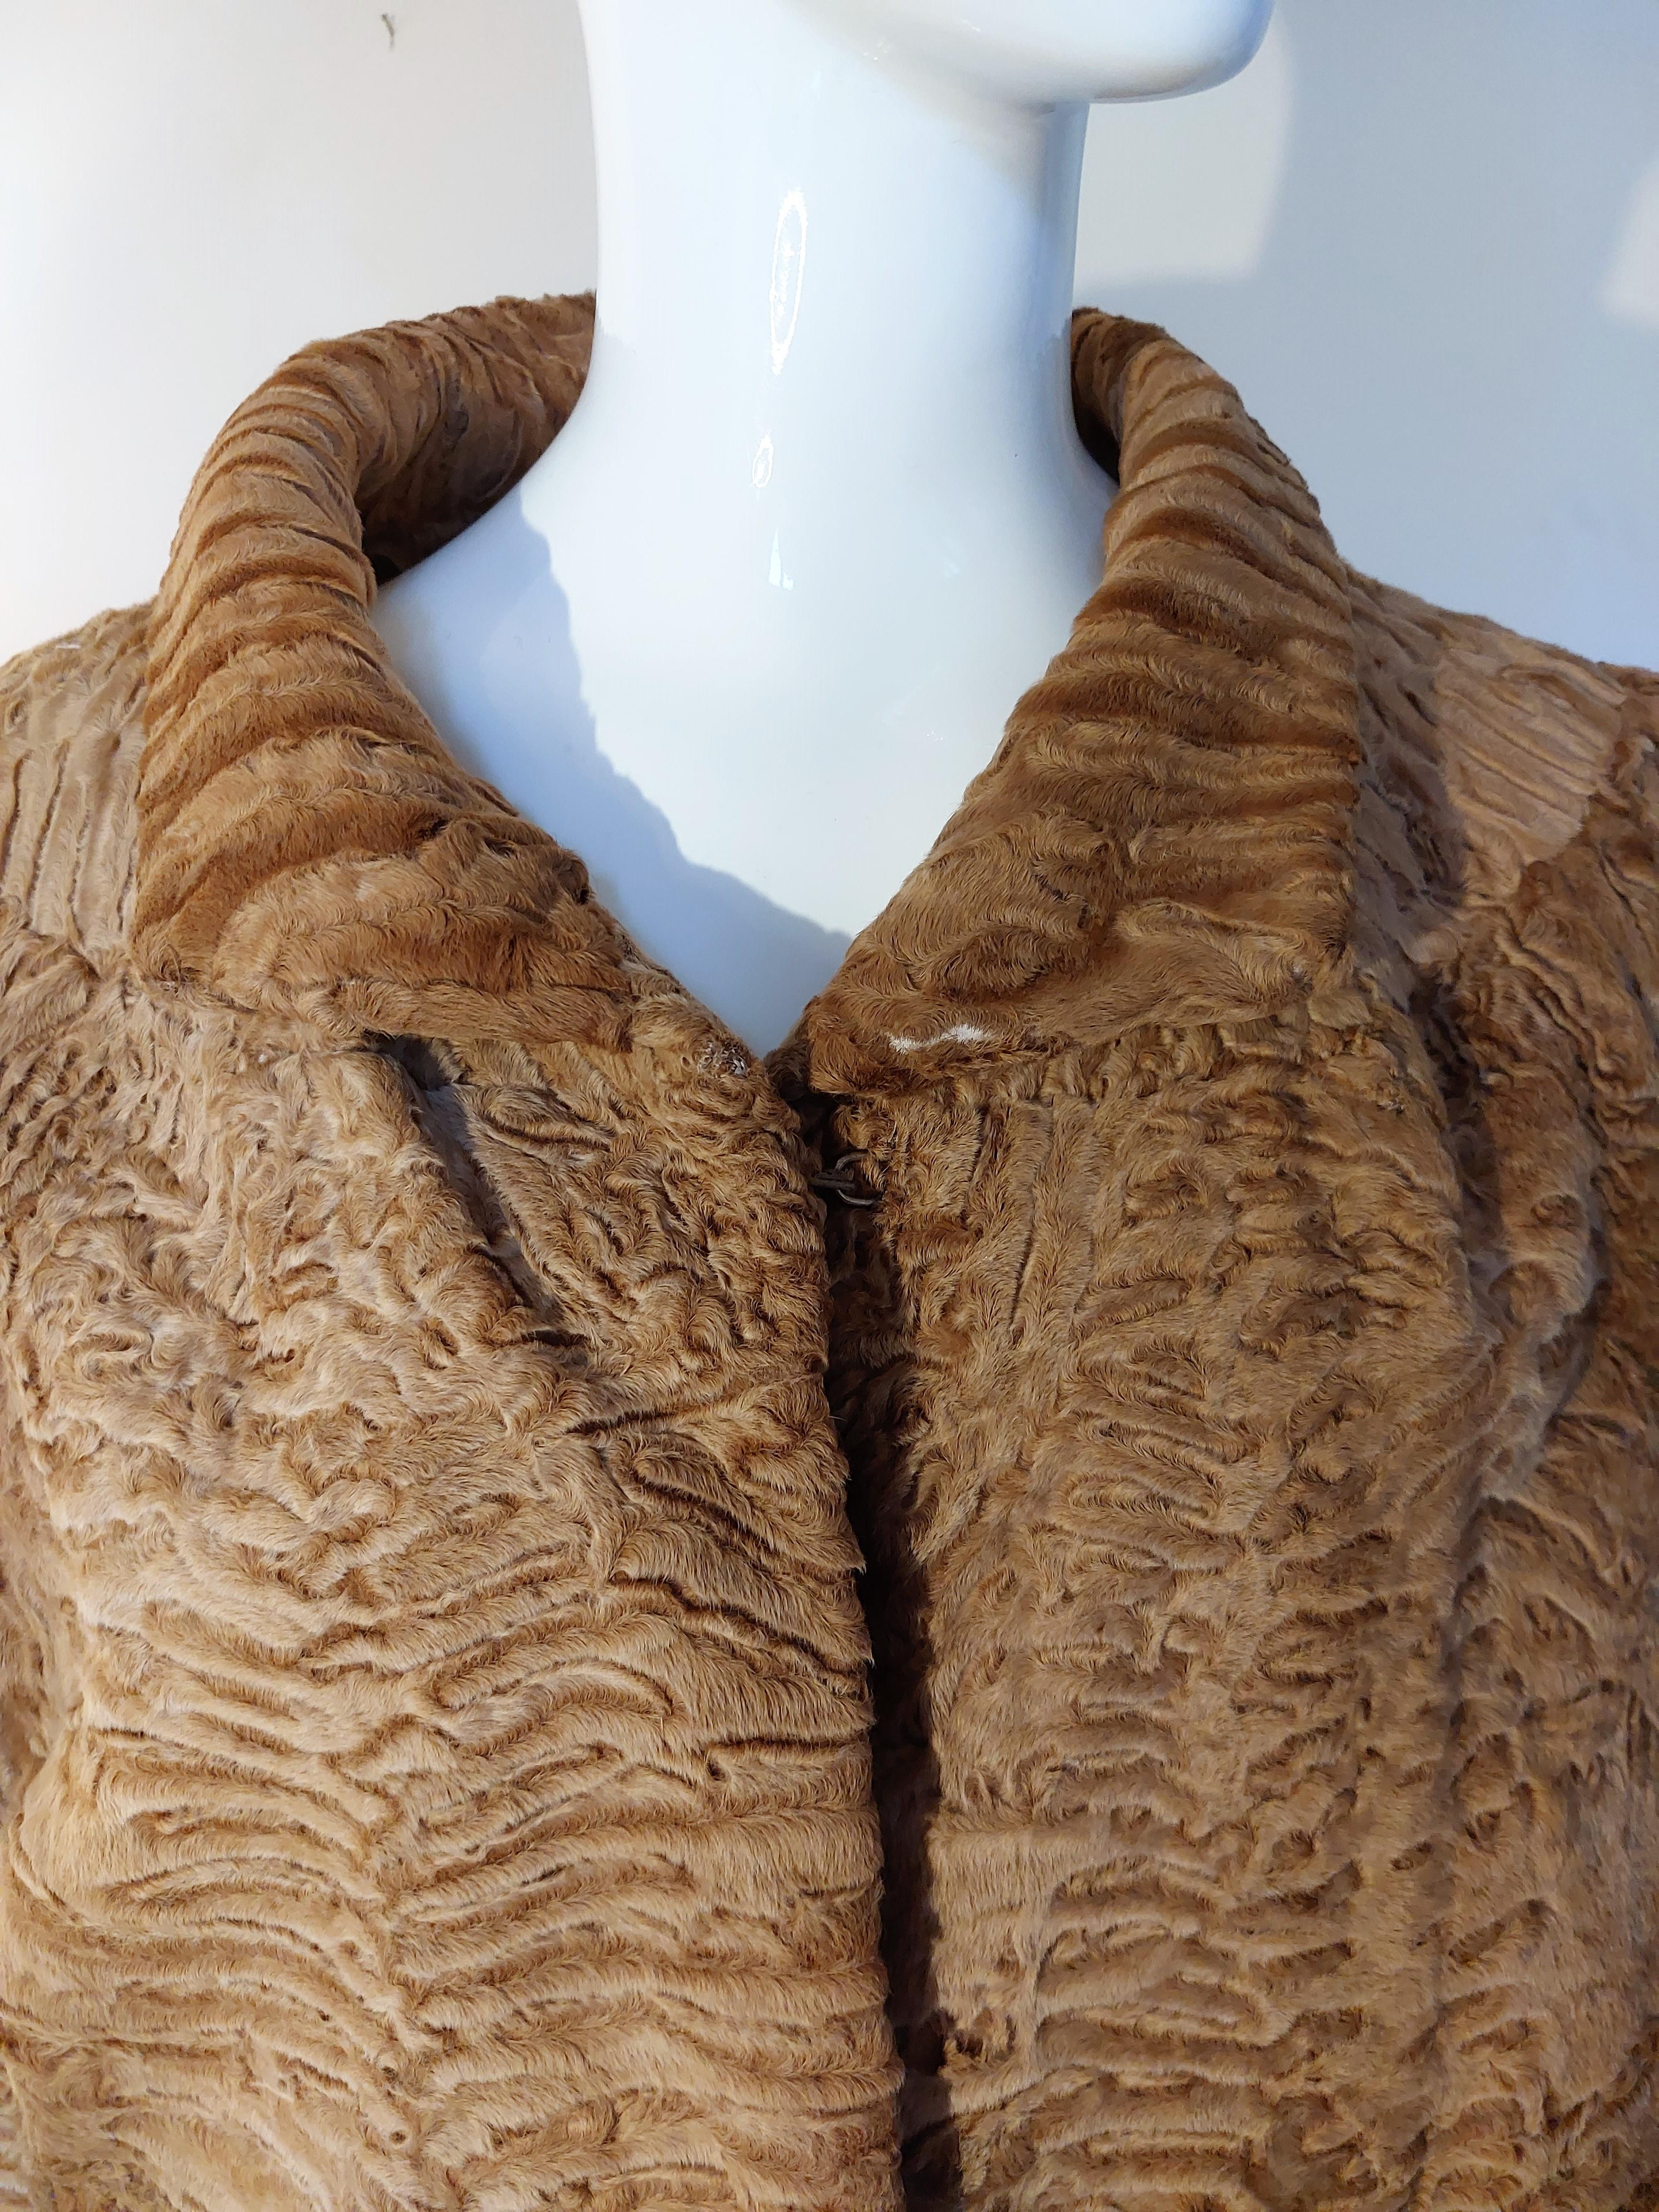 Fendi Alta Moda Fronta Roma by  Ciwifurs Leather Fur Animal Print Leopard Jacket Brown Coat 

Très bon état !
Mesures : Taille idéale pour M/L.
D'une aisselle à l'autre : 54 cm
D'une épaule à l'autre : 48 cm
Longueur : 60-65 cm
Longueur des manches